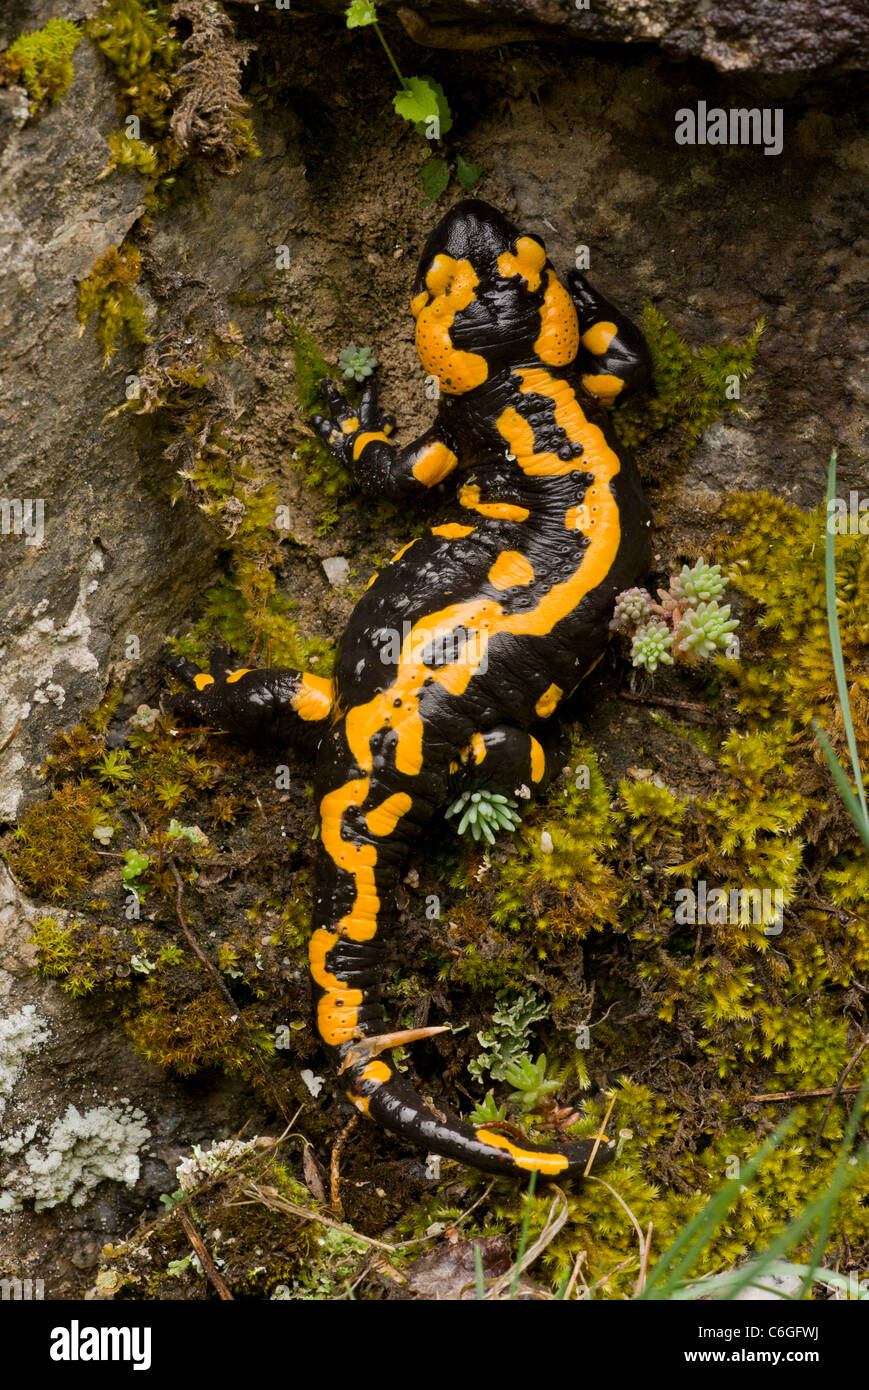 Fire Salamander, Salamandra salamandra, old adult; Pirin National Park, Bulgaria Stock Photo